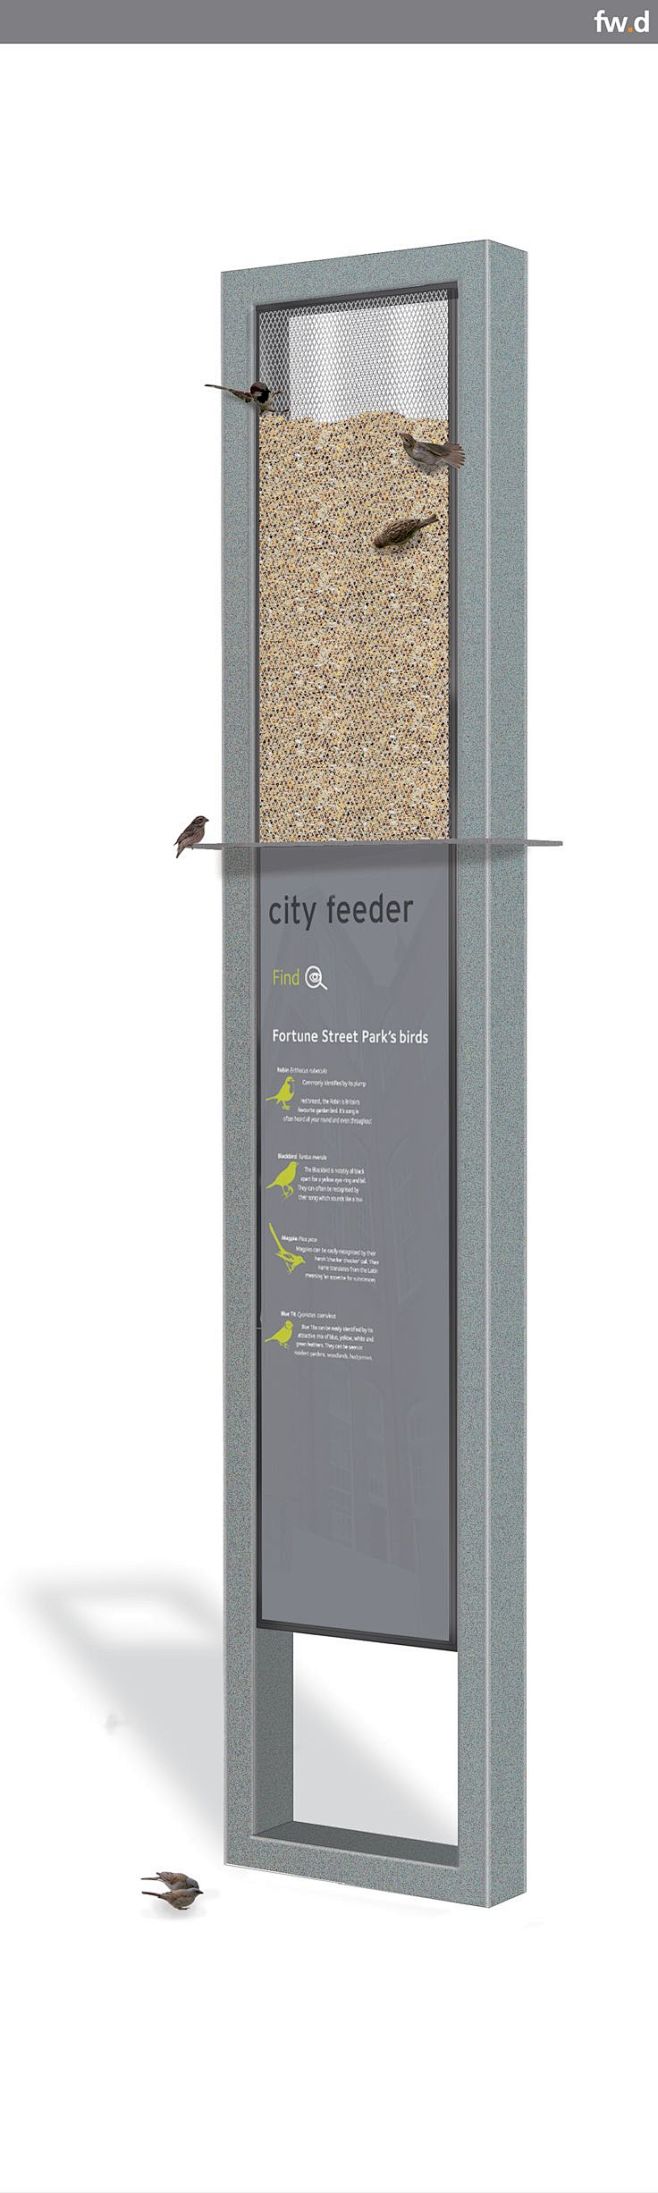 frank city bird feed...